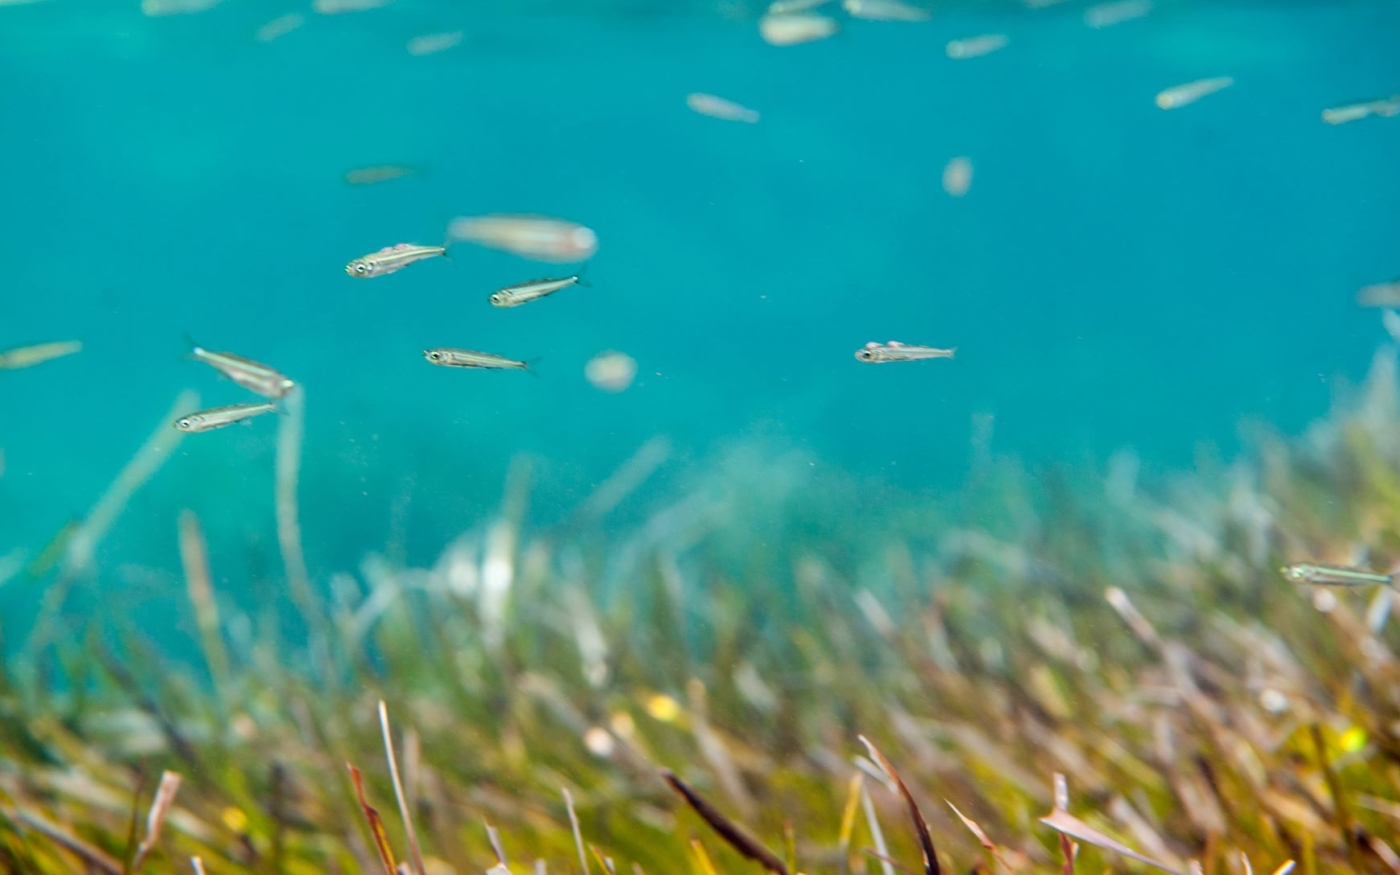 Les herbiers de Posidonia oceanica sont une partie importante des écosystèmes marins autour de la côte méditerranéenne (Flickr/Jean-Marc-Kuffer)